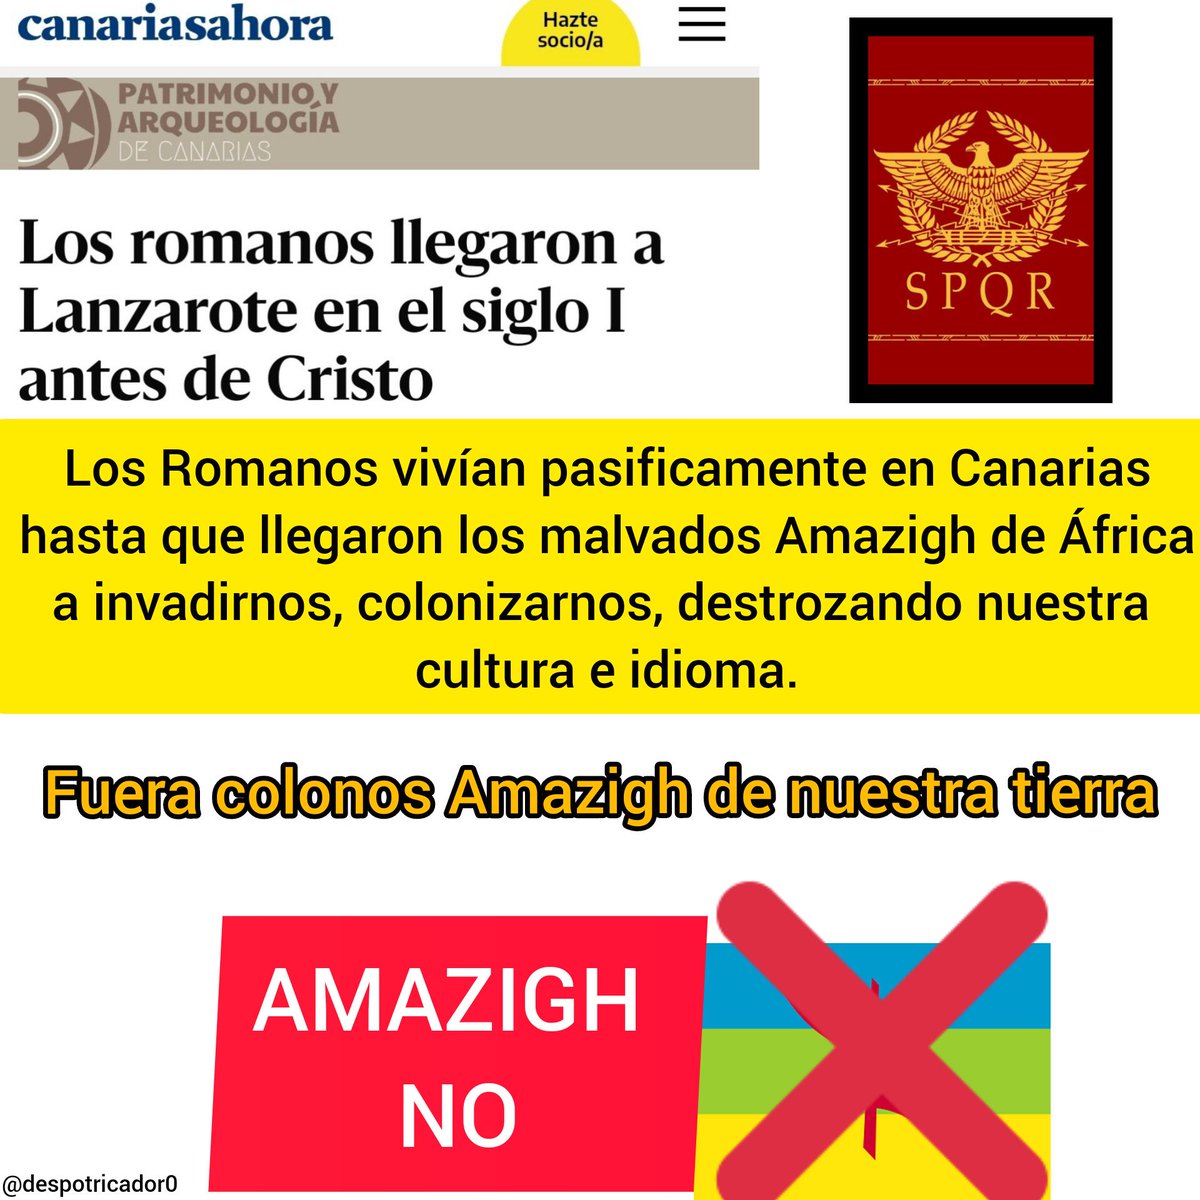 📢 Exijo la descolonización de Canarias por parte de los Amazigh/Bereberes.
▶️ Los Romanos estaban primero en estás islas y llegaron estos malvados a invadirnos. 

CANARIAS LIBRE DE BEREBERES ✊

#CanariasTieneUnLímite 
#canarias #españa